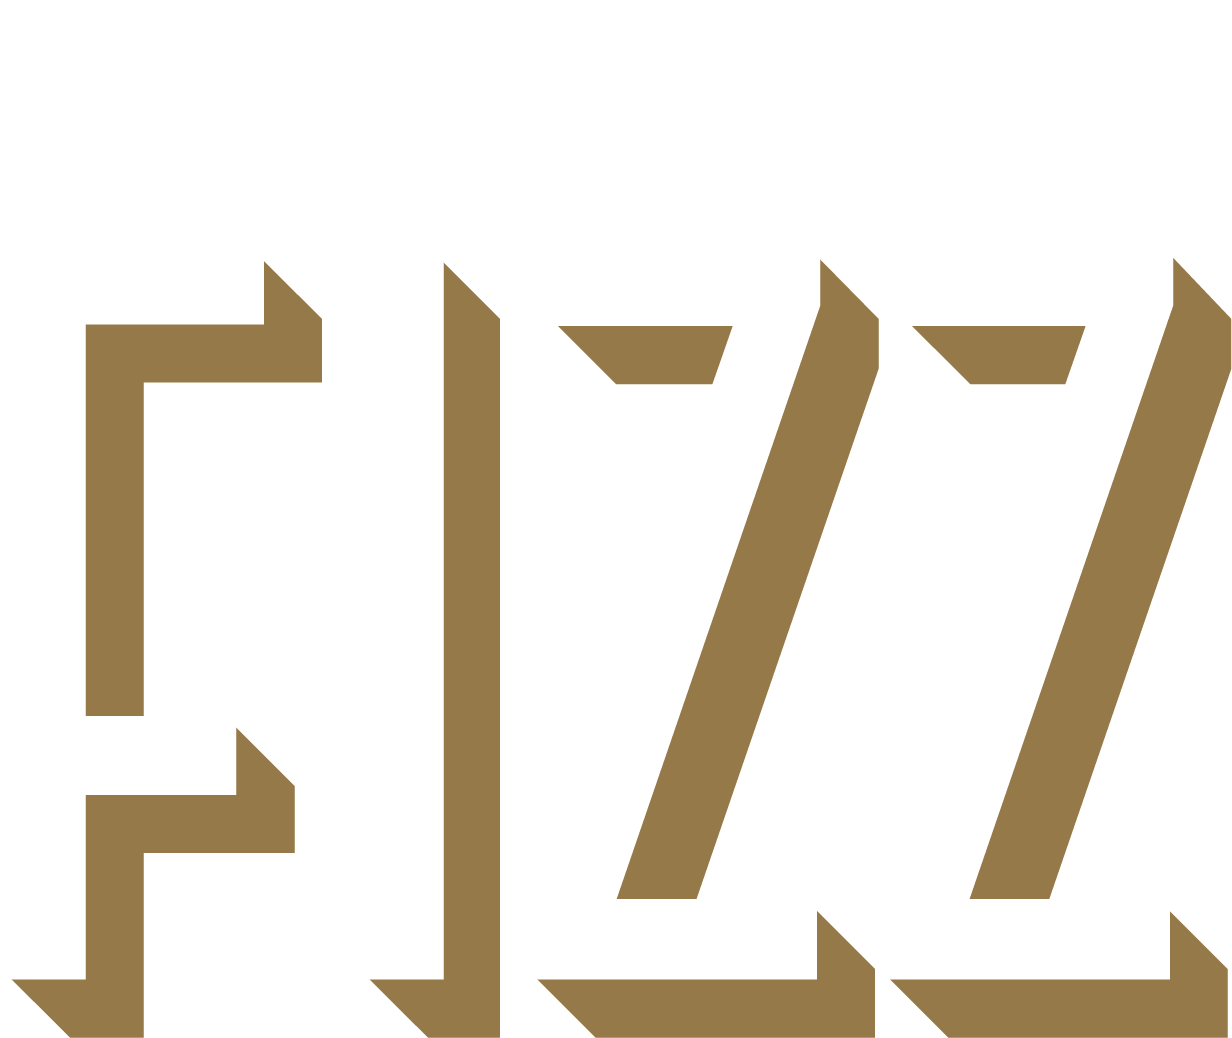 Bar Fizz